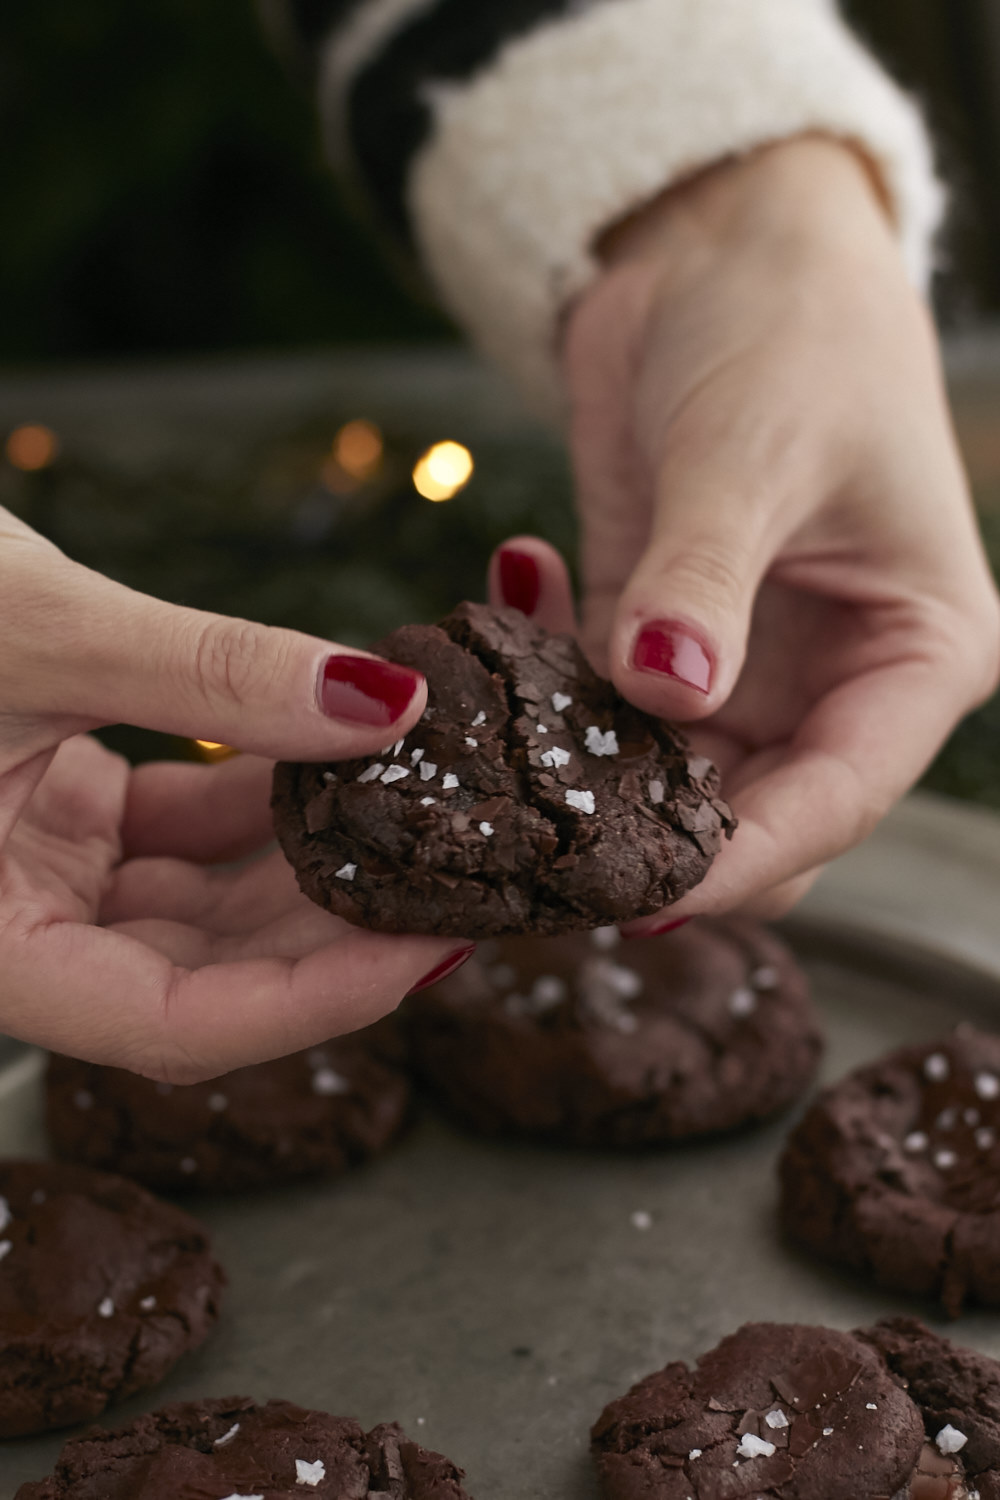 Softe Doppel-Chocolate Kekse mit Karamellkern und Salz Topping. So lecker - die sind ruckzuck weg.